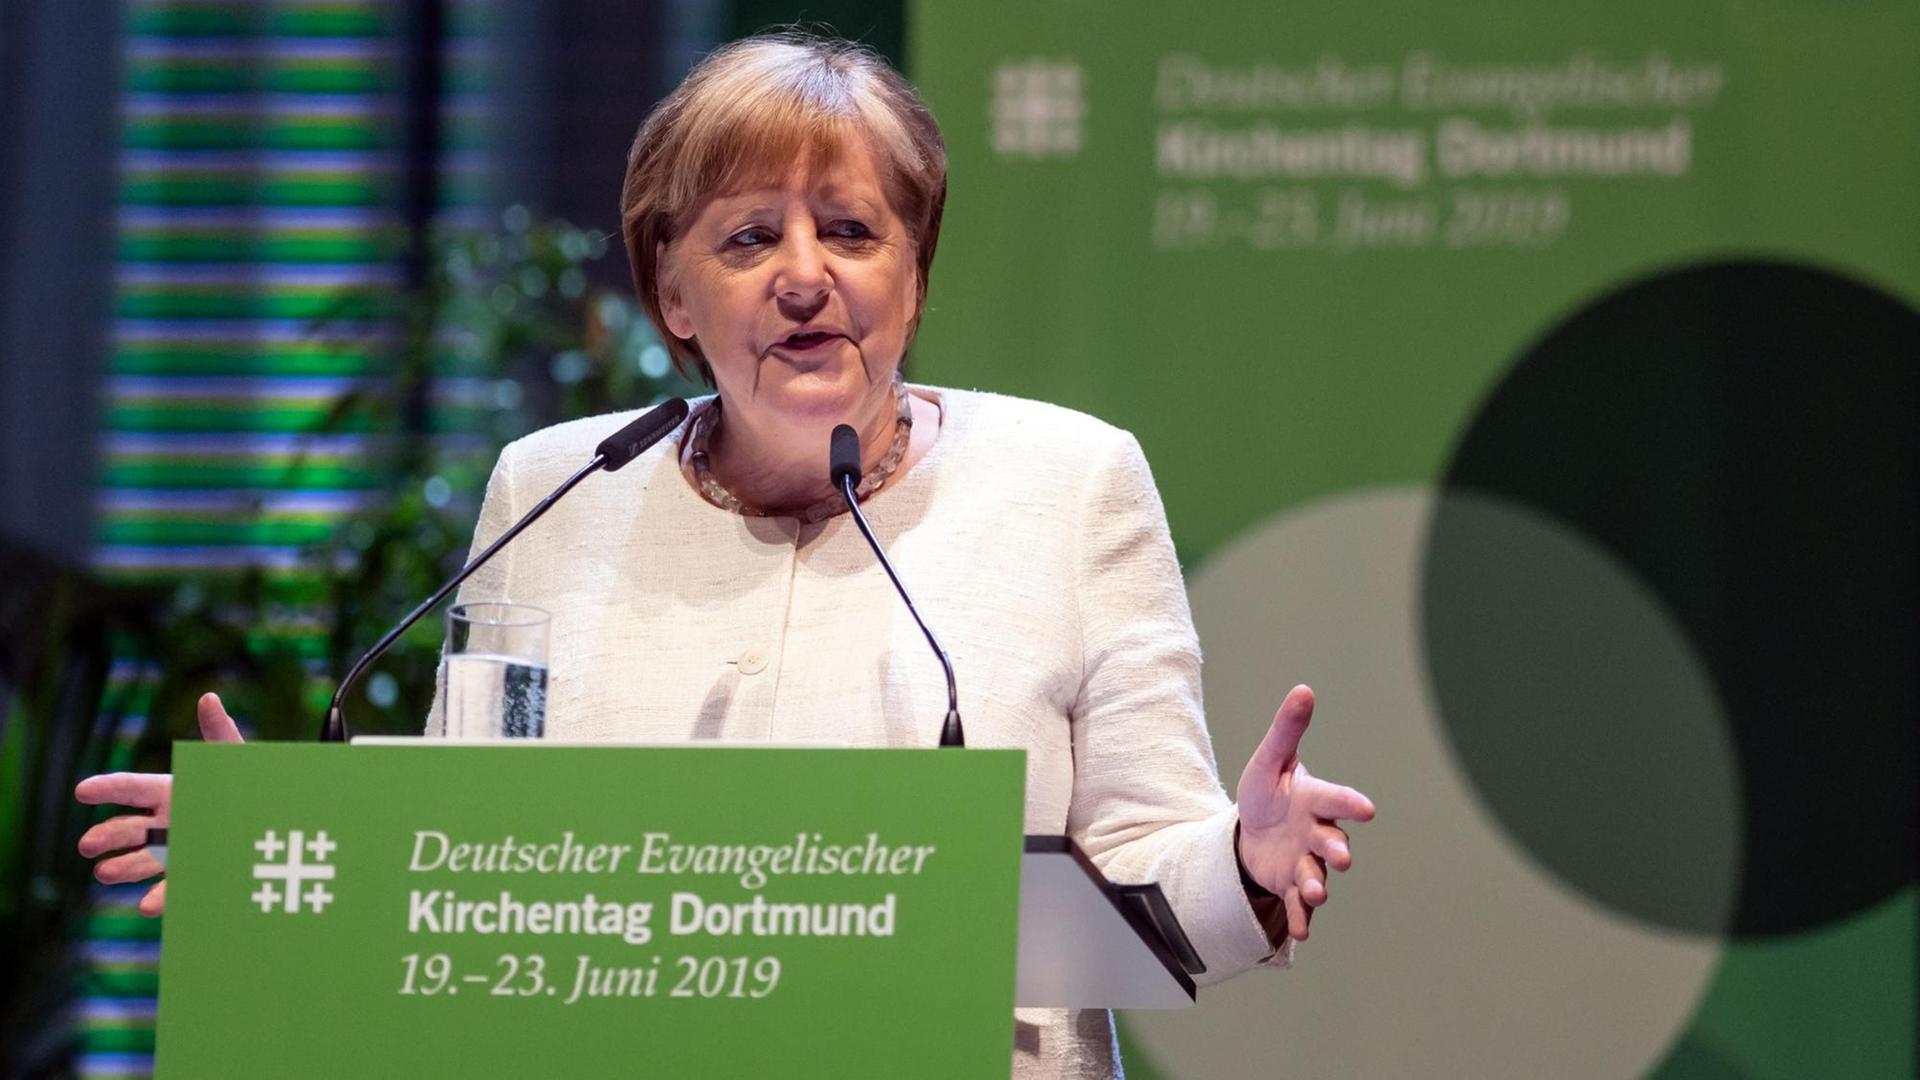 Merkel steht an einem Redner-Pult mit einem grünen Schild von dem Kirchentag. Sie spricht und breitet dabei beide Hände aus.